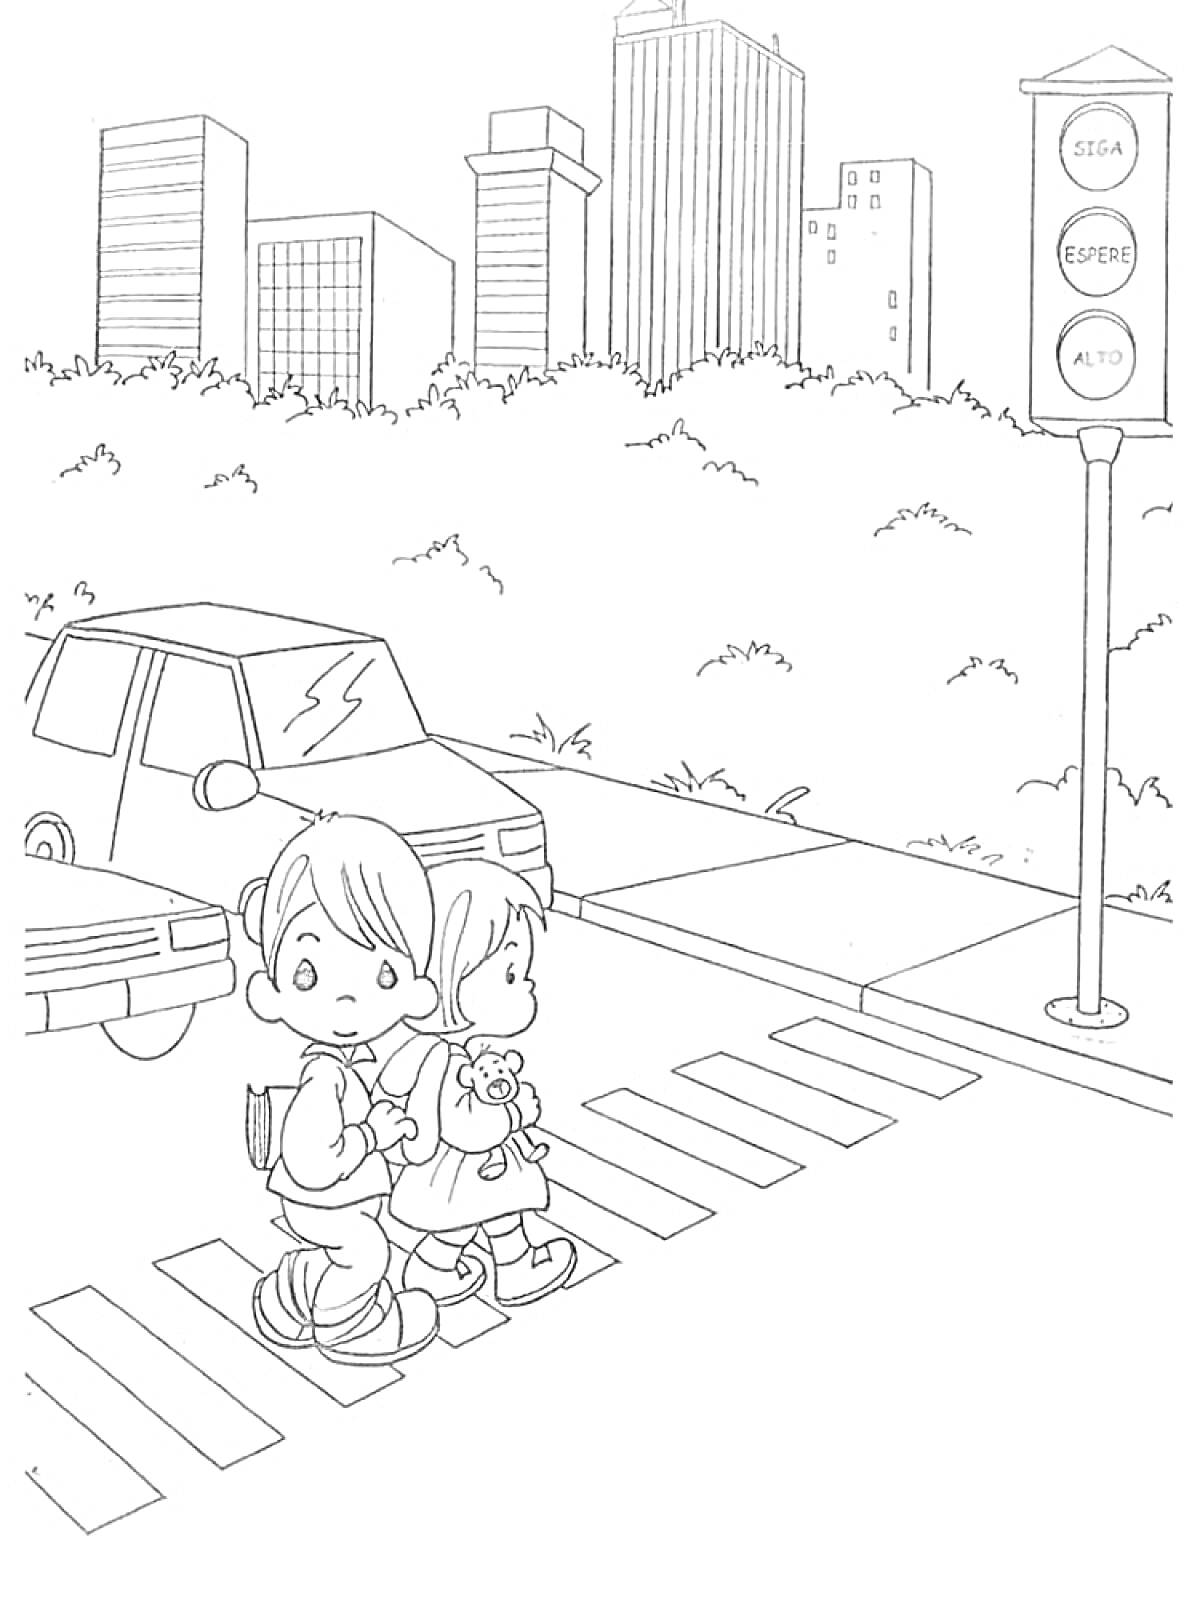 Дети переходят дорогу на пешеходном переходе со светофором в городском фоне